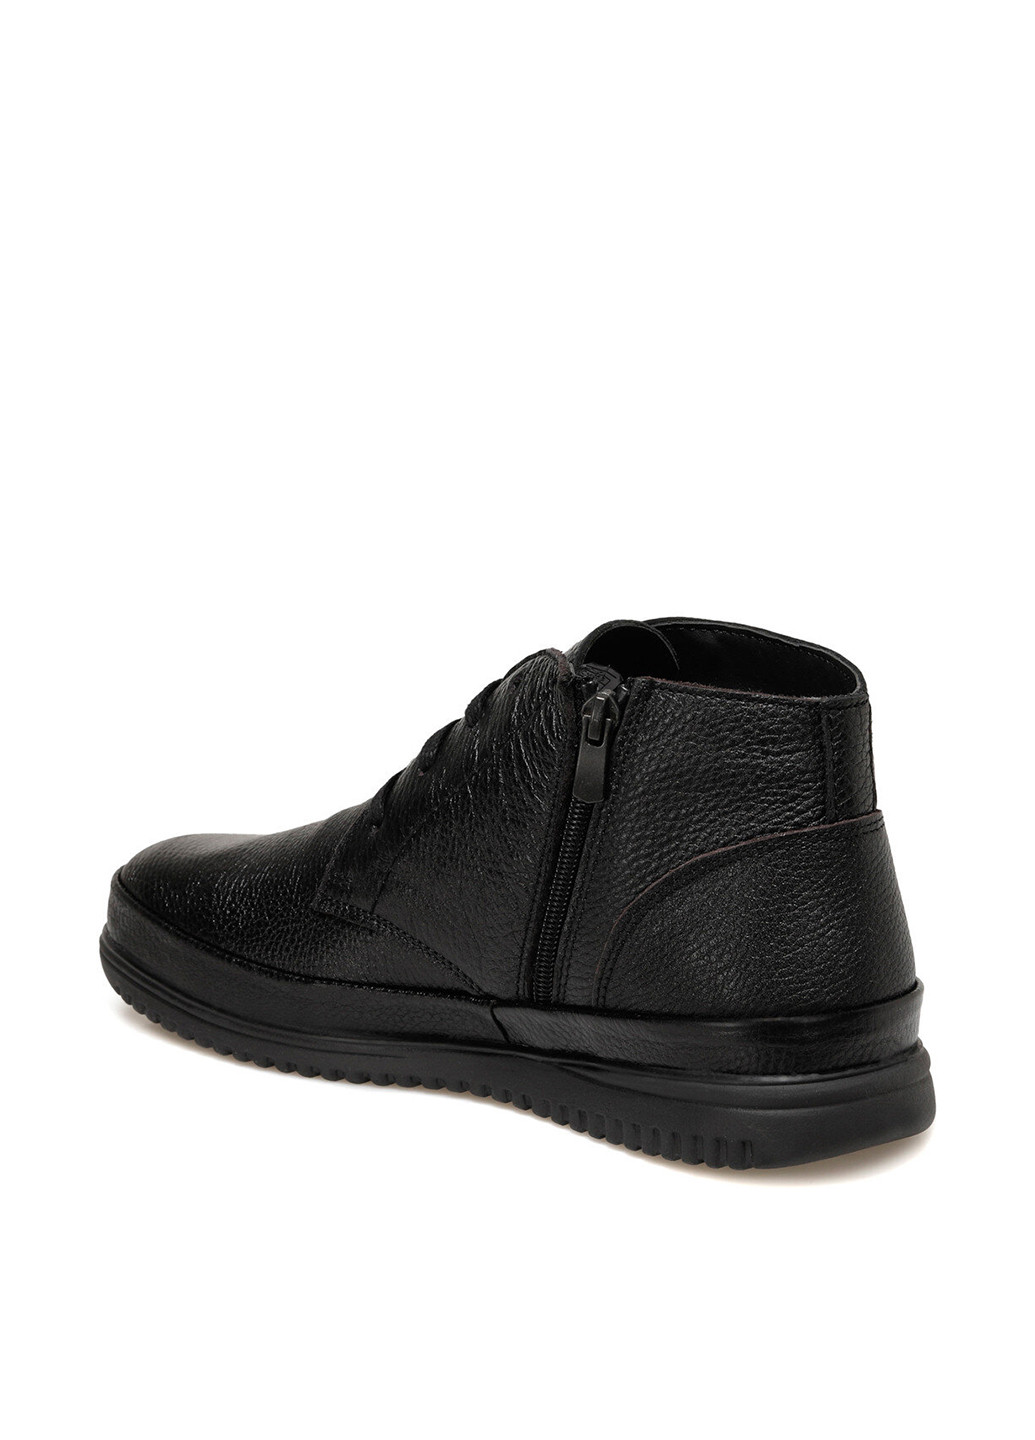 Черные осенние ботинки Dockers